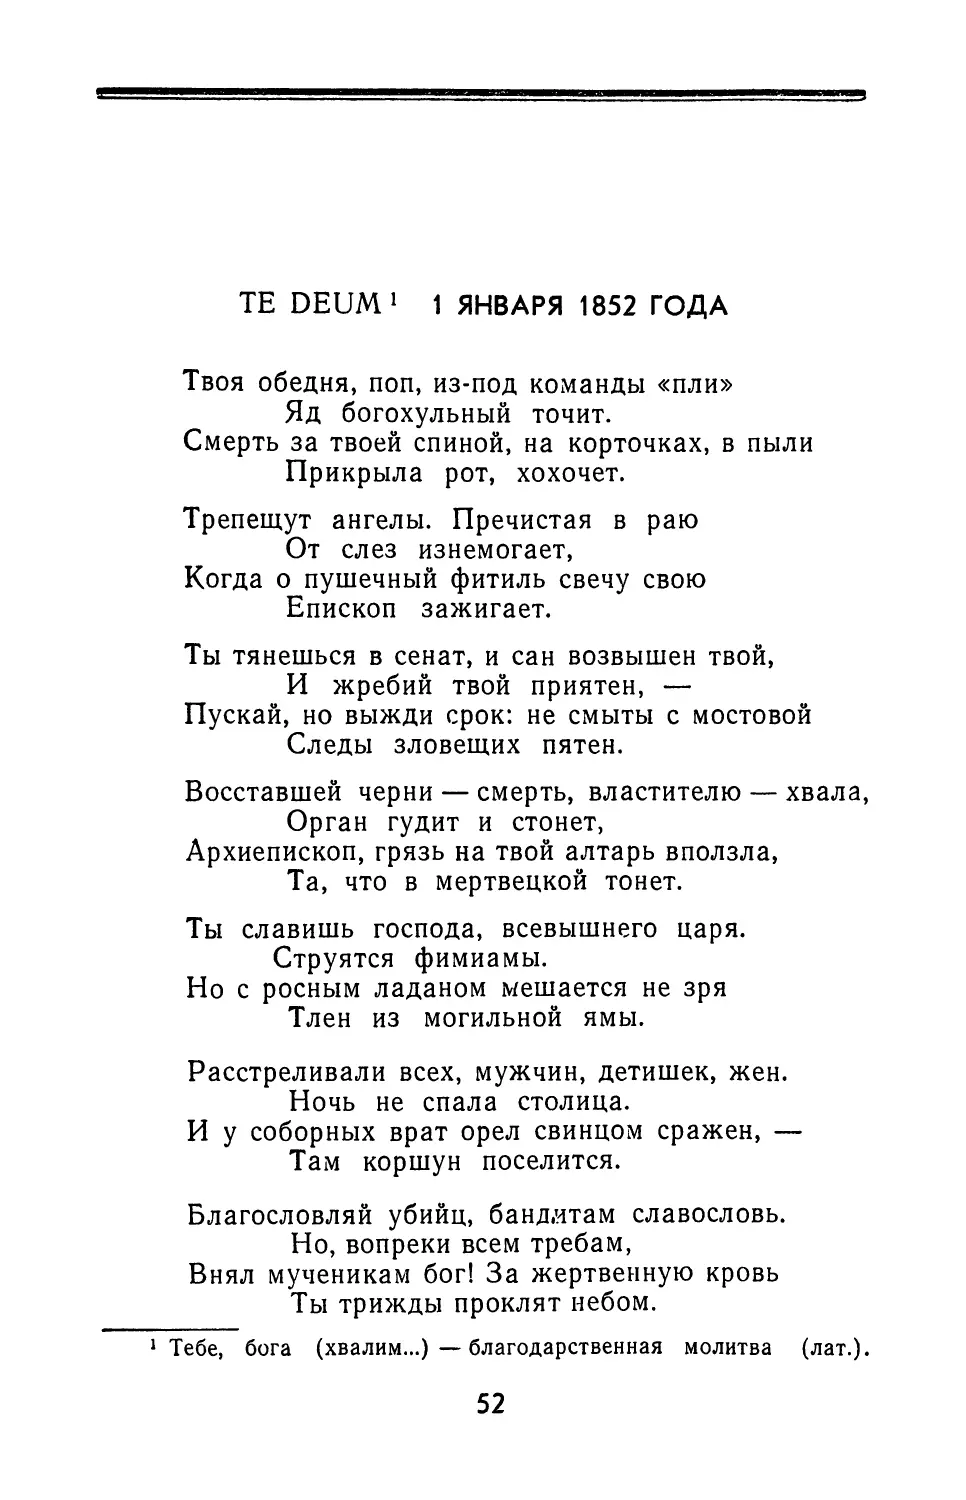 Te Deum 1 января 1852 года